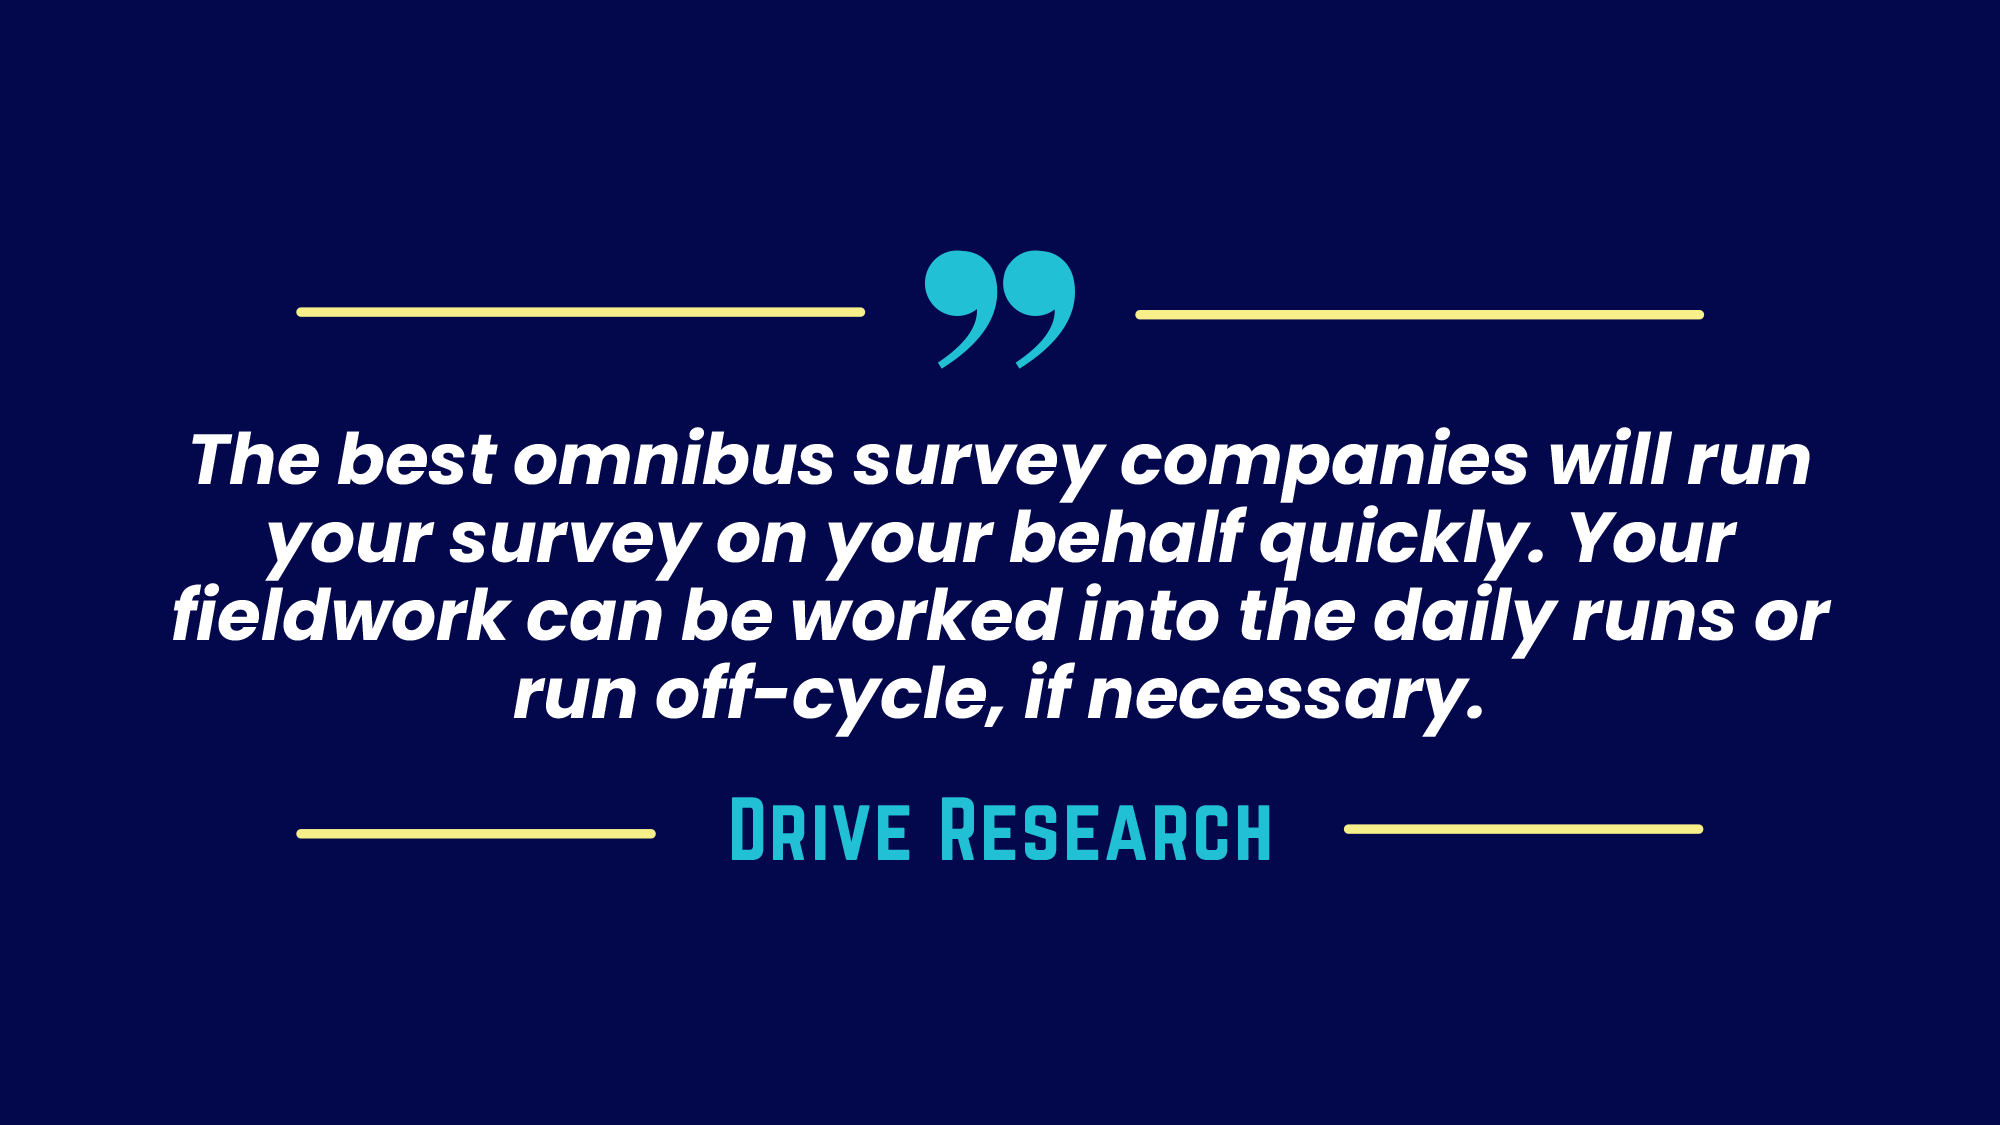 Omnibus surveys quote